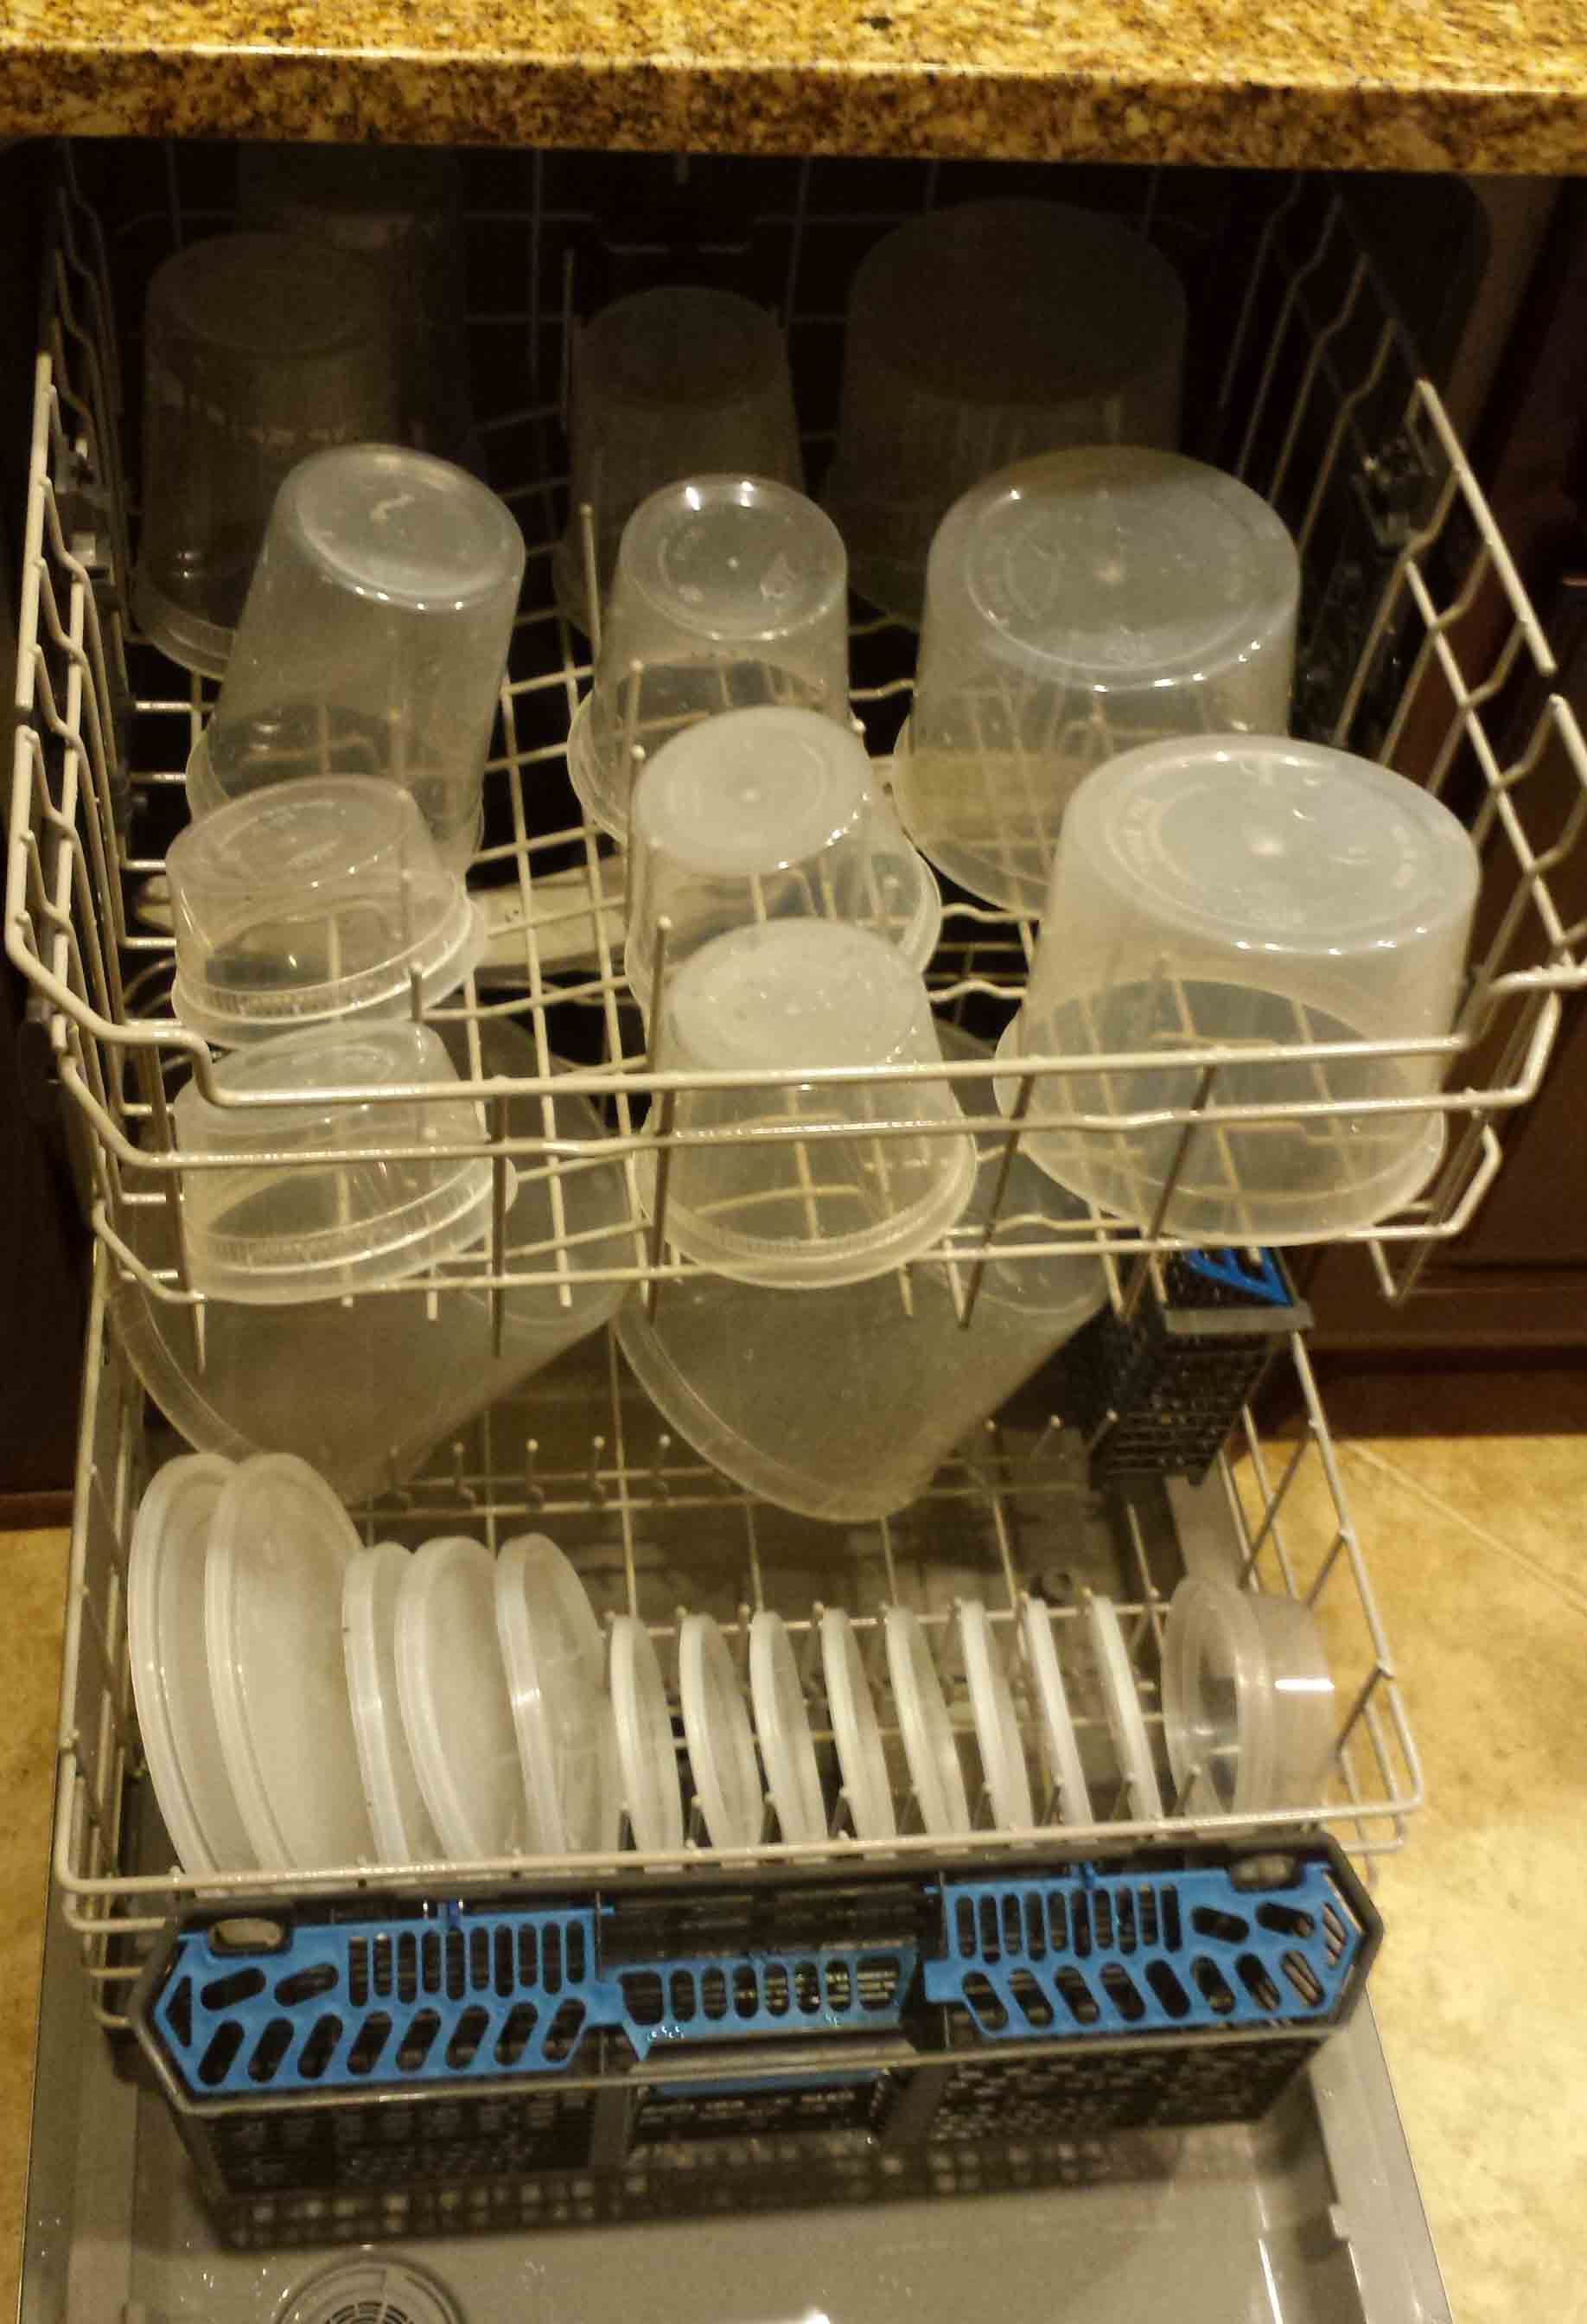 http://pak-man.com/images/detailed/1/dishwasher.jpg